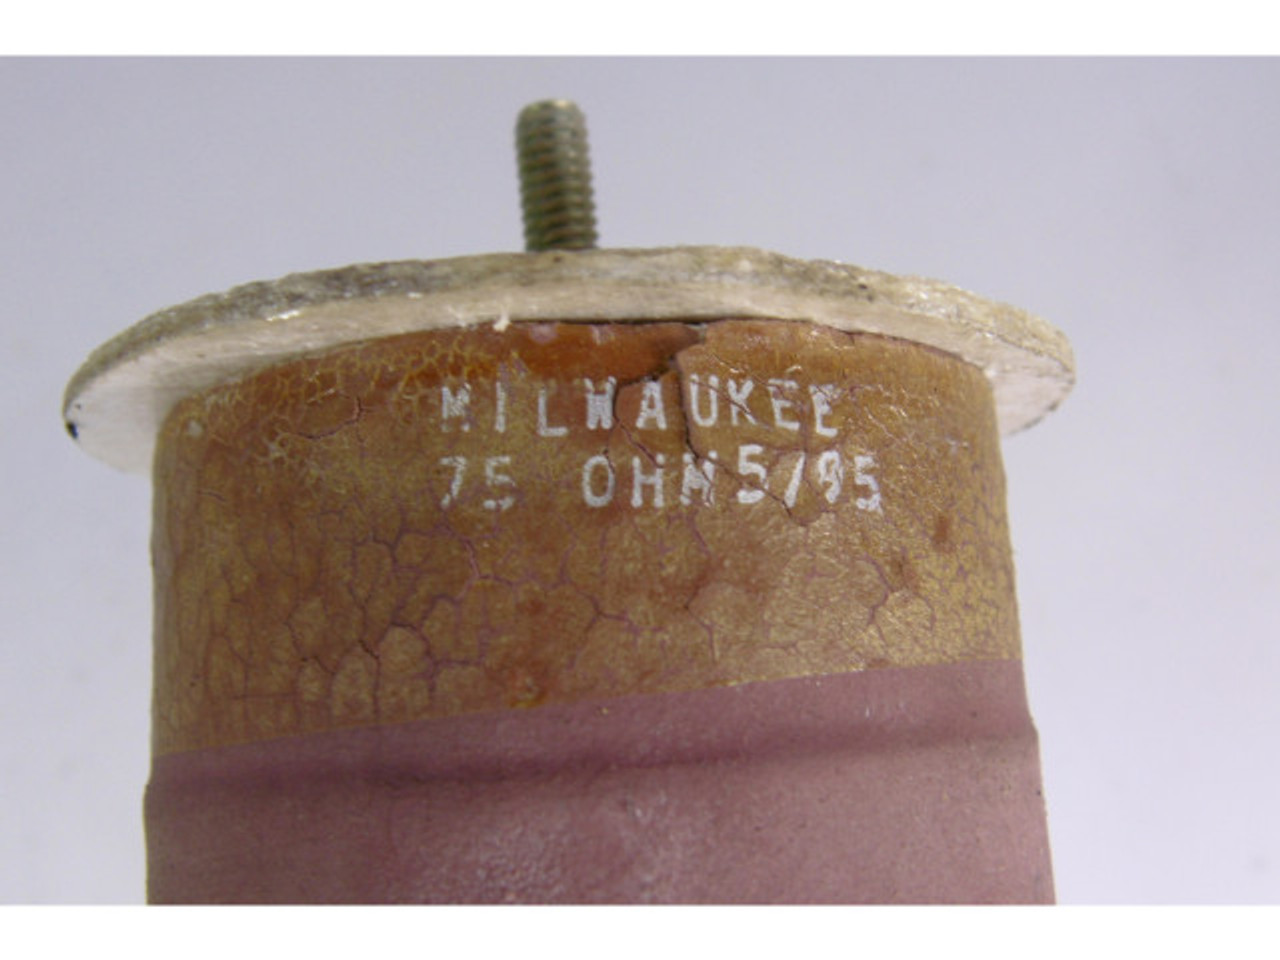 Milwaukee 75 Ohm Resistor 15" USED